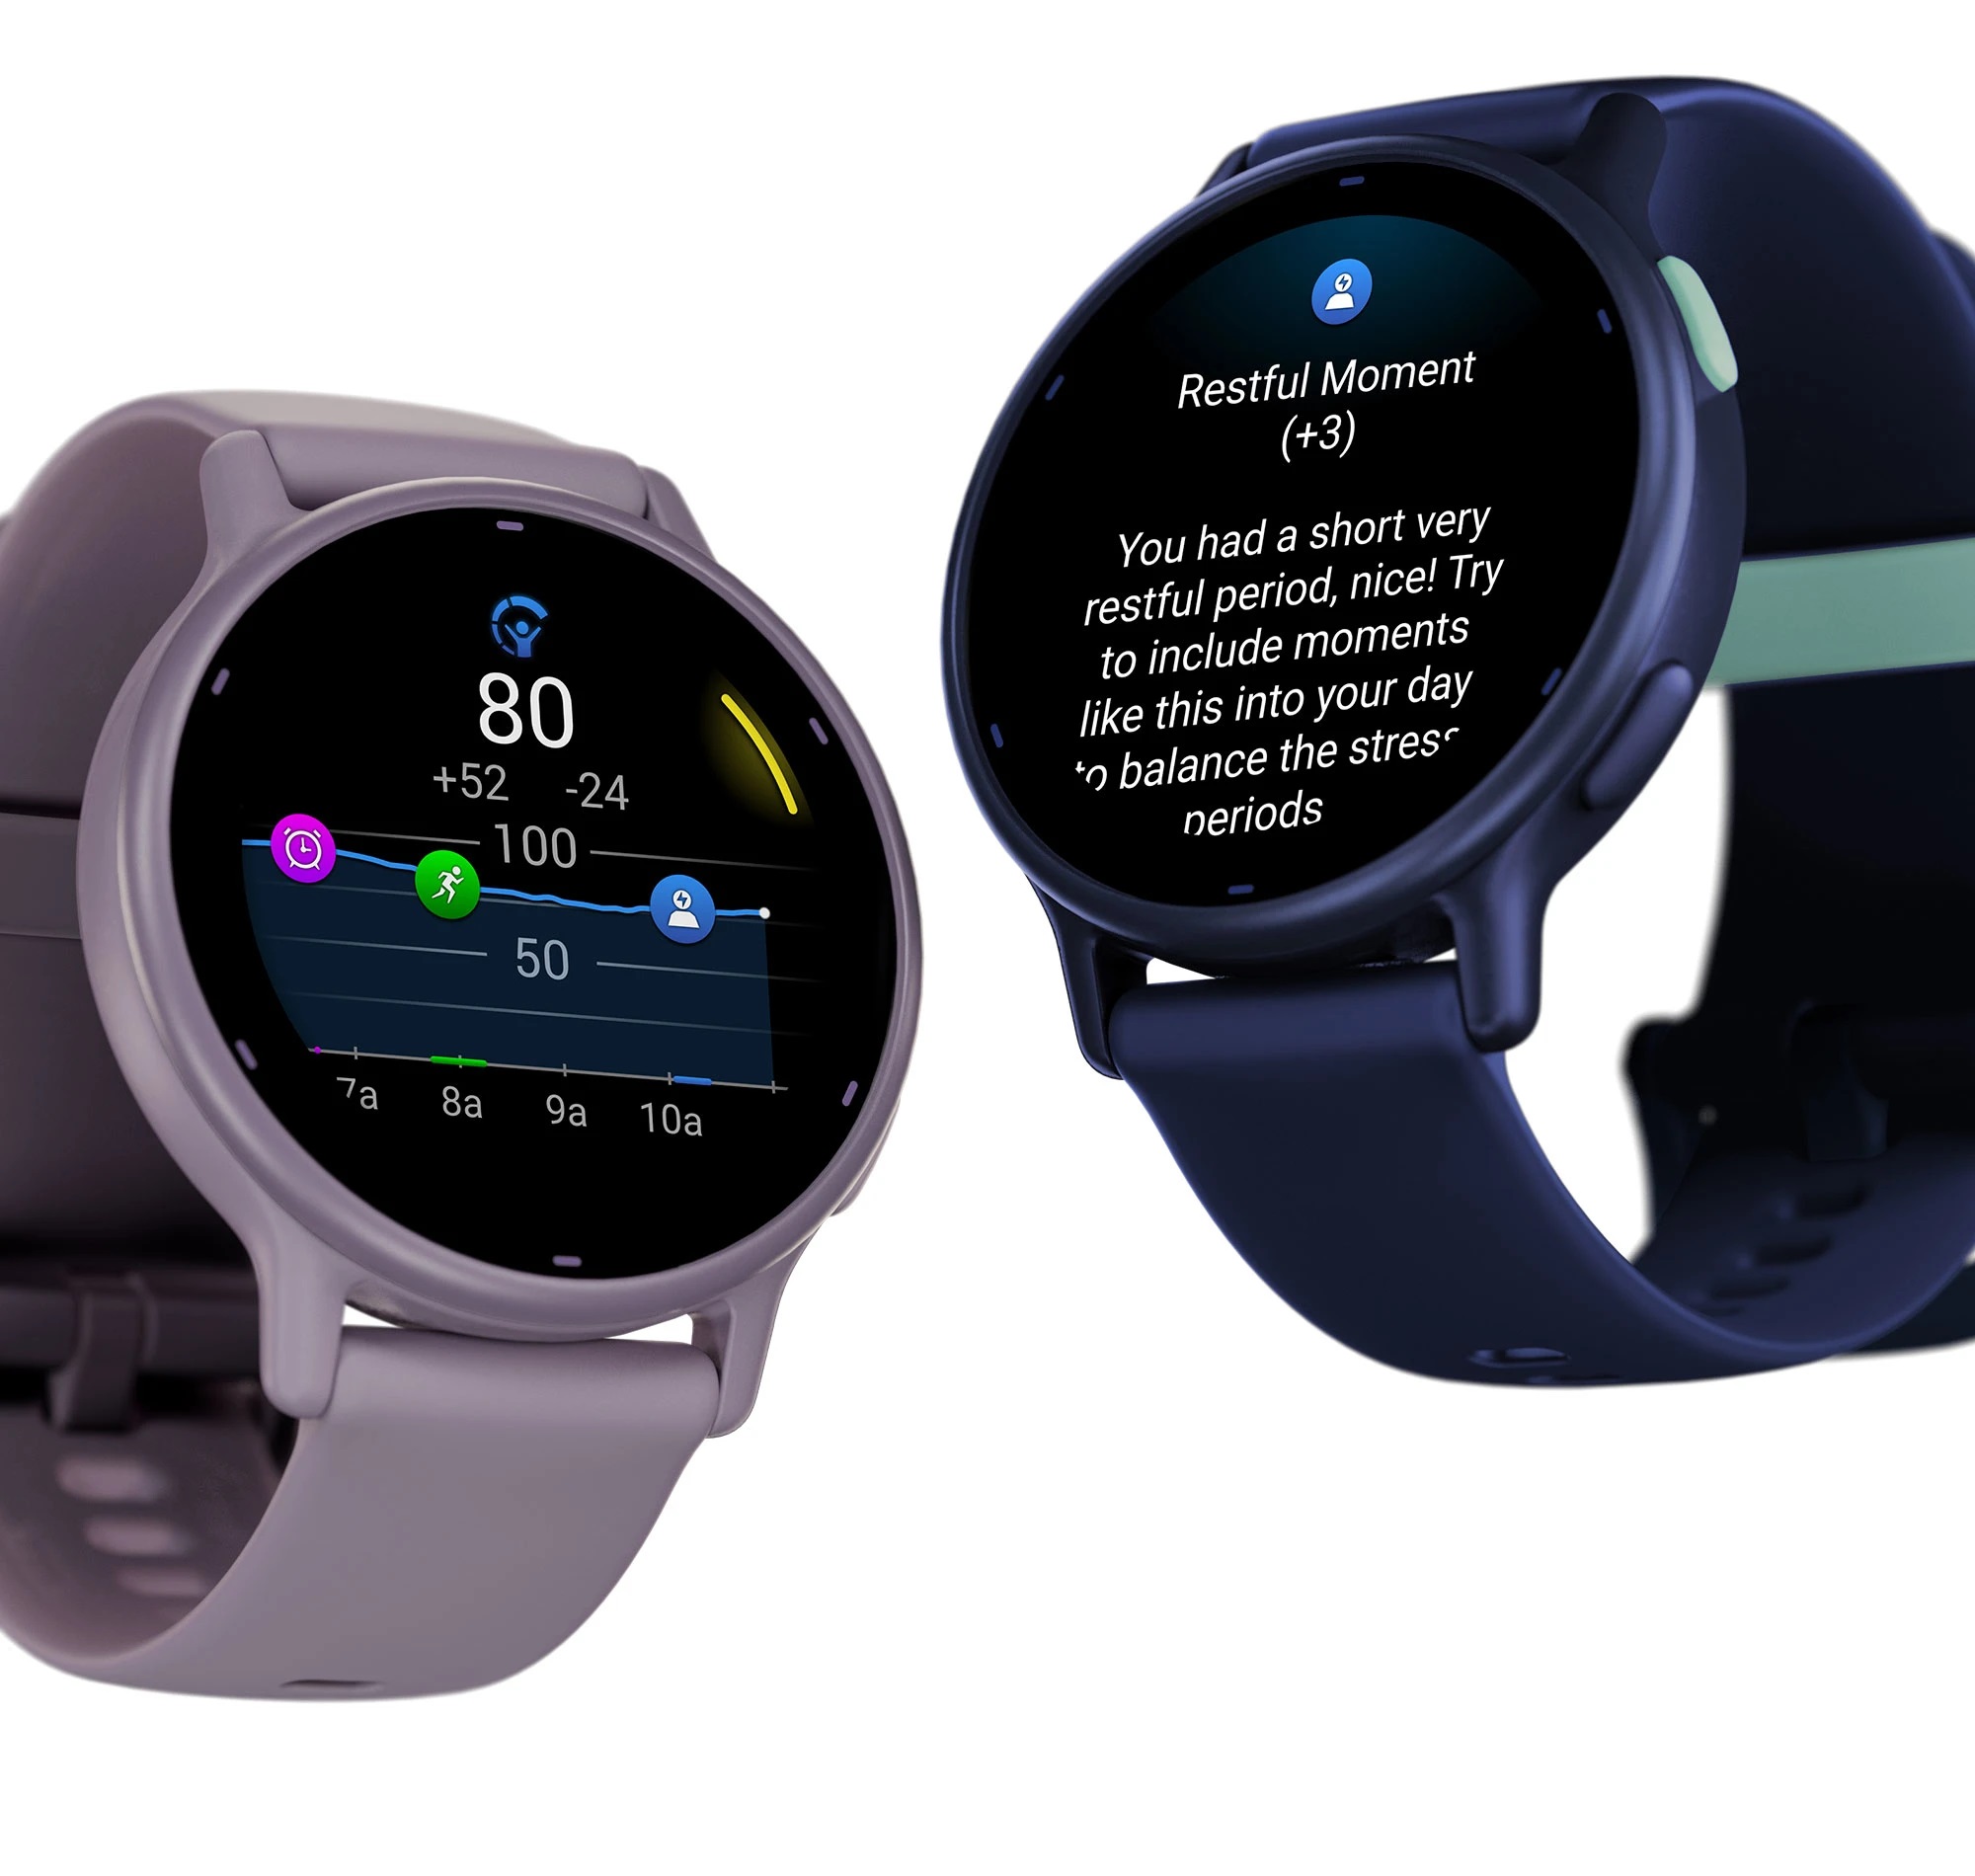 Garmin Vivoactive 5 : une smartwatch avec 11 jours d'autonomie et